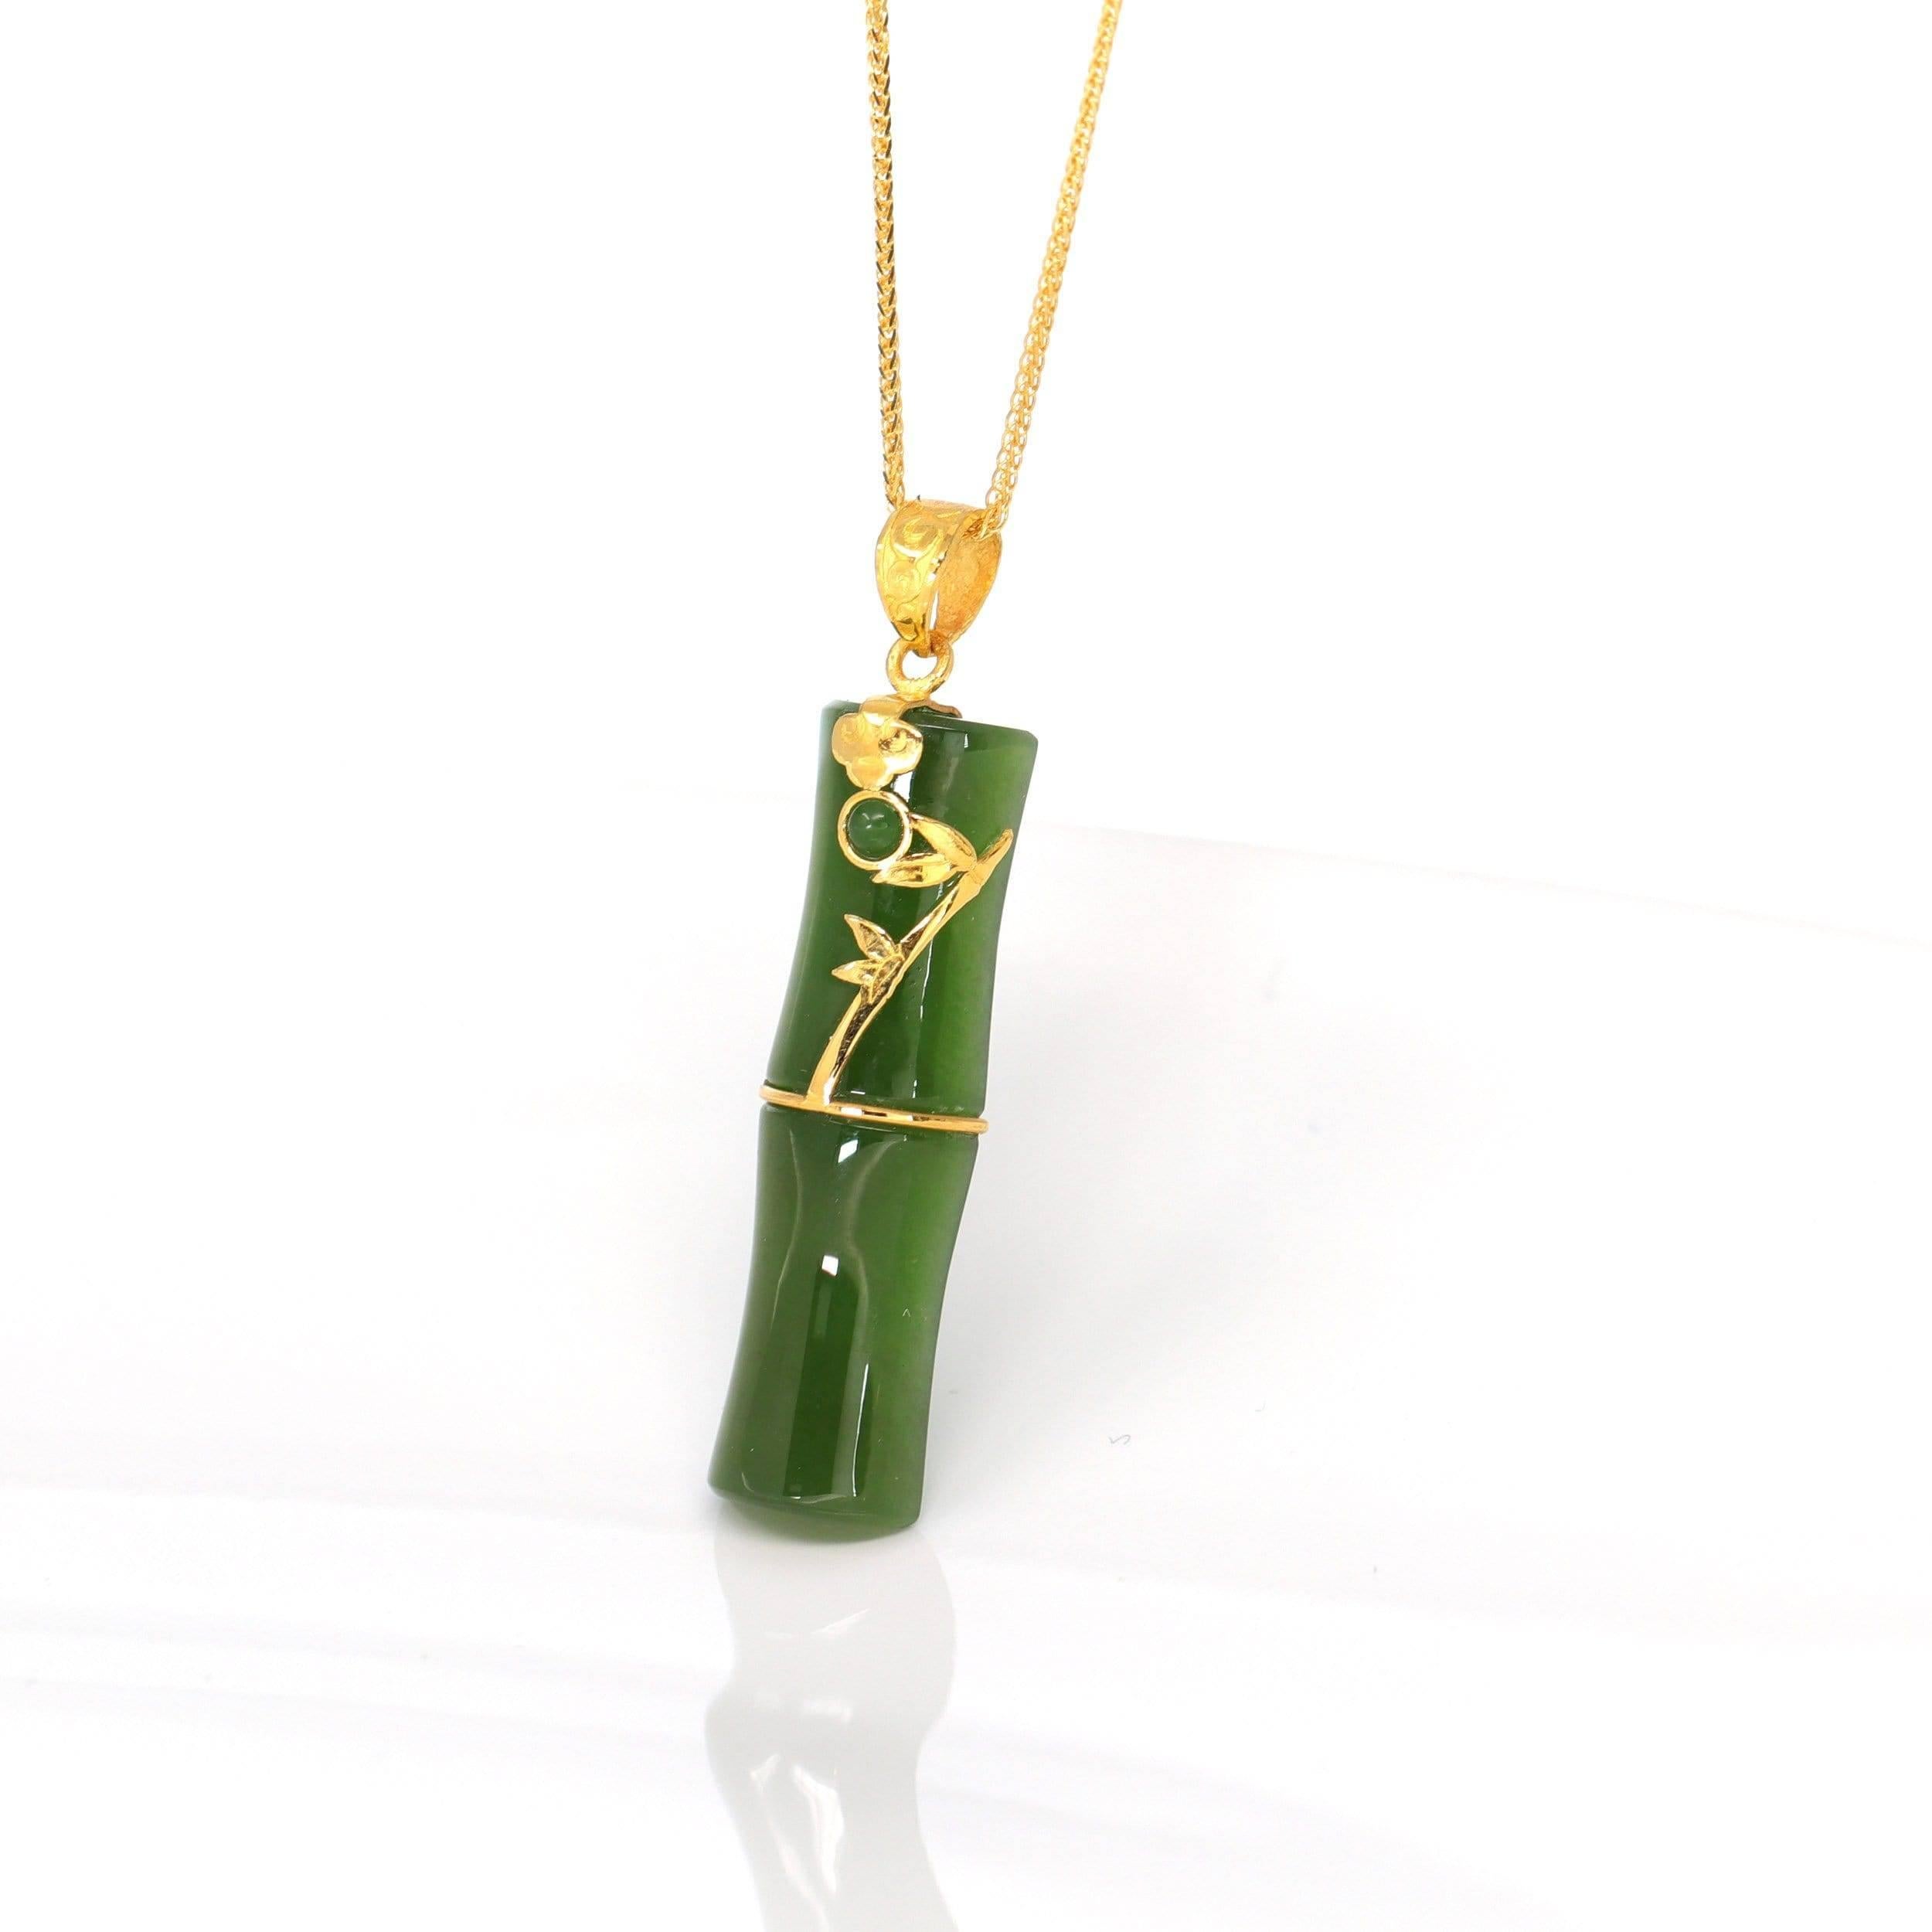 * DÉTAILS--- Collier pendentif en or jaune 24 carats avec jade vert et néphrite véritable. Ce pendentif est fabriqué avec du jade vert authentique de haute qualité. La texture du jade vert est si lisse et translucide. C'est parfait sans défaut. Un